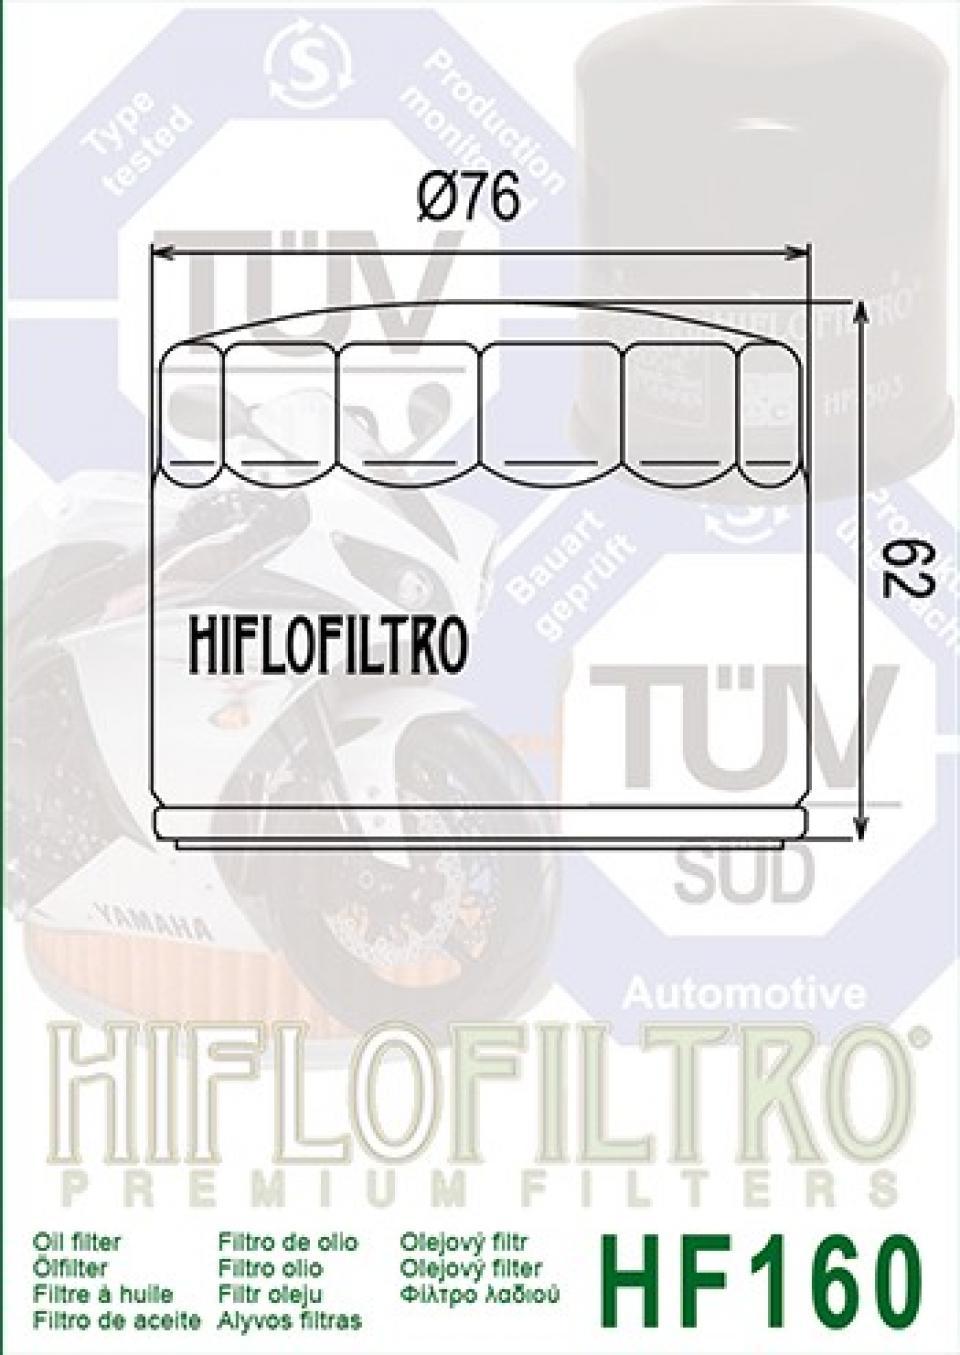 Filtre à huile Hiflofiltro pour Moto BMW 1200 K S Abs 2005 à 2008 Neuf